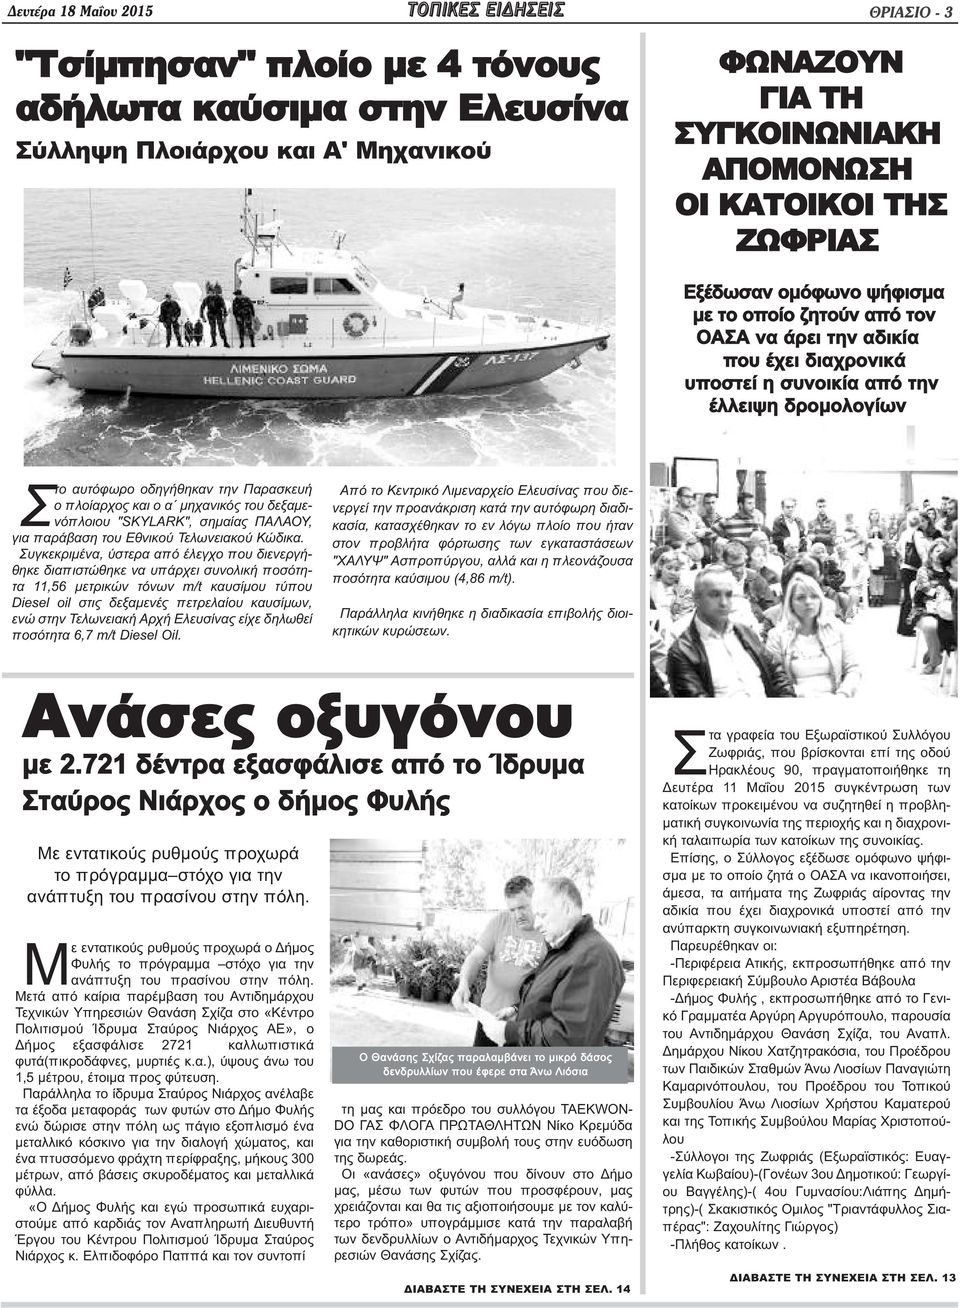 πλοίαρχος και ο α μηχανικός του δεξαμενόπλοιου "SKYLARK", σημαίας ΠΑΛΑΟΥ, για παράβαση του Εθνικού Τελωνειακού Κώδικα.